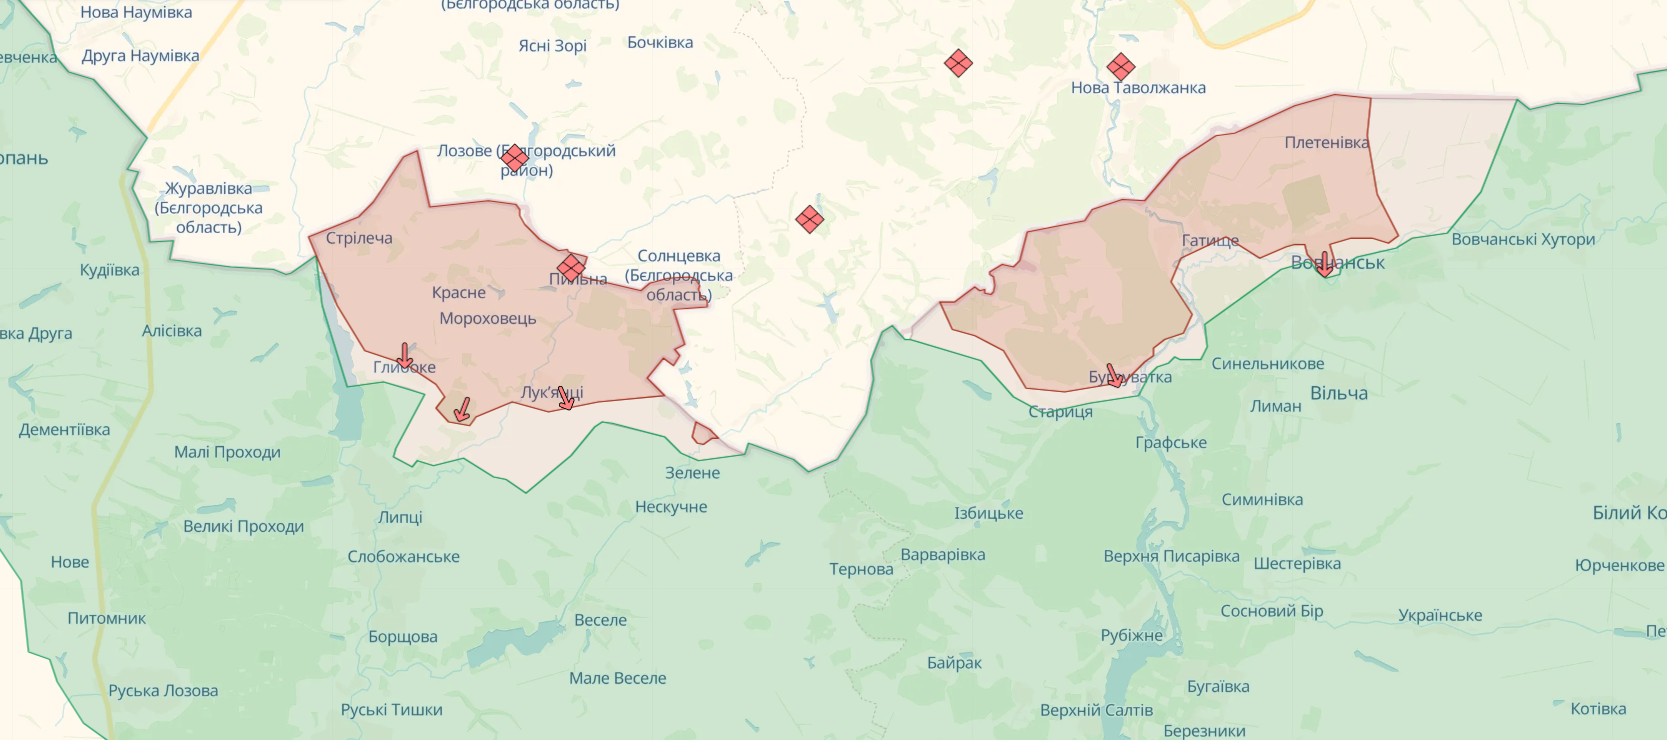 В районе Липцев и Старицы Харьковской области идут бои: в Генштабе рассказали о ситуации. Карта